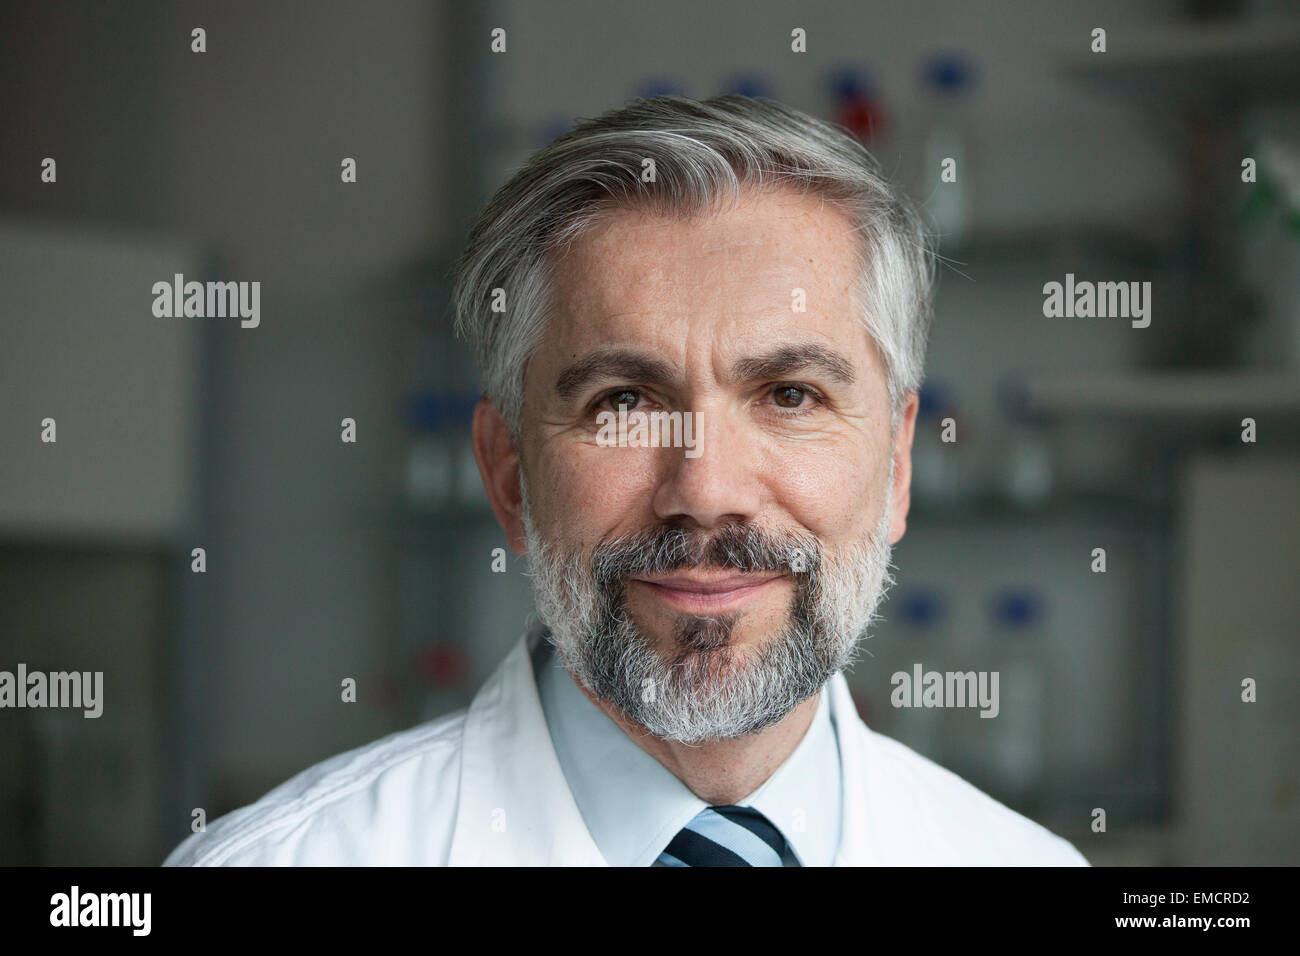 Portrait of smiling scientist Banque D'Images